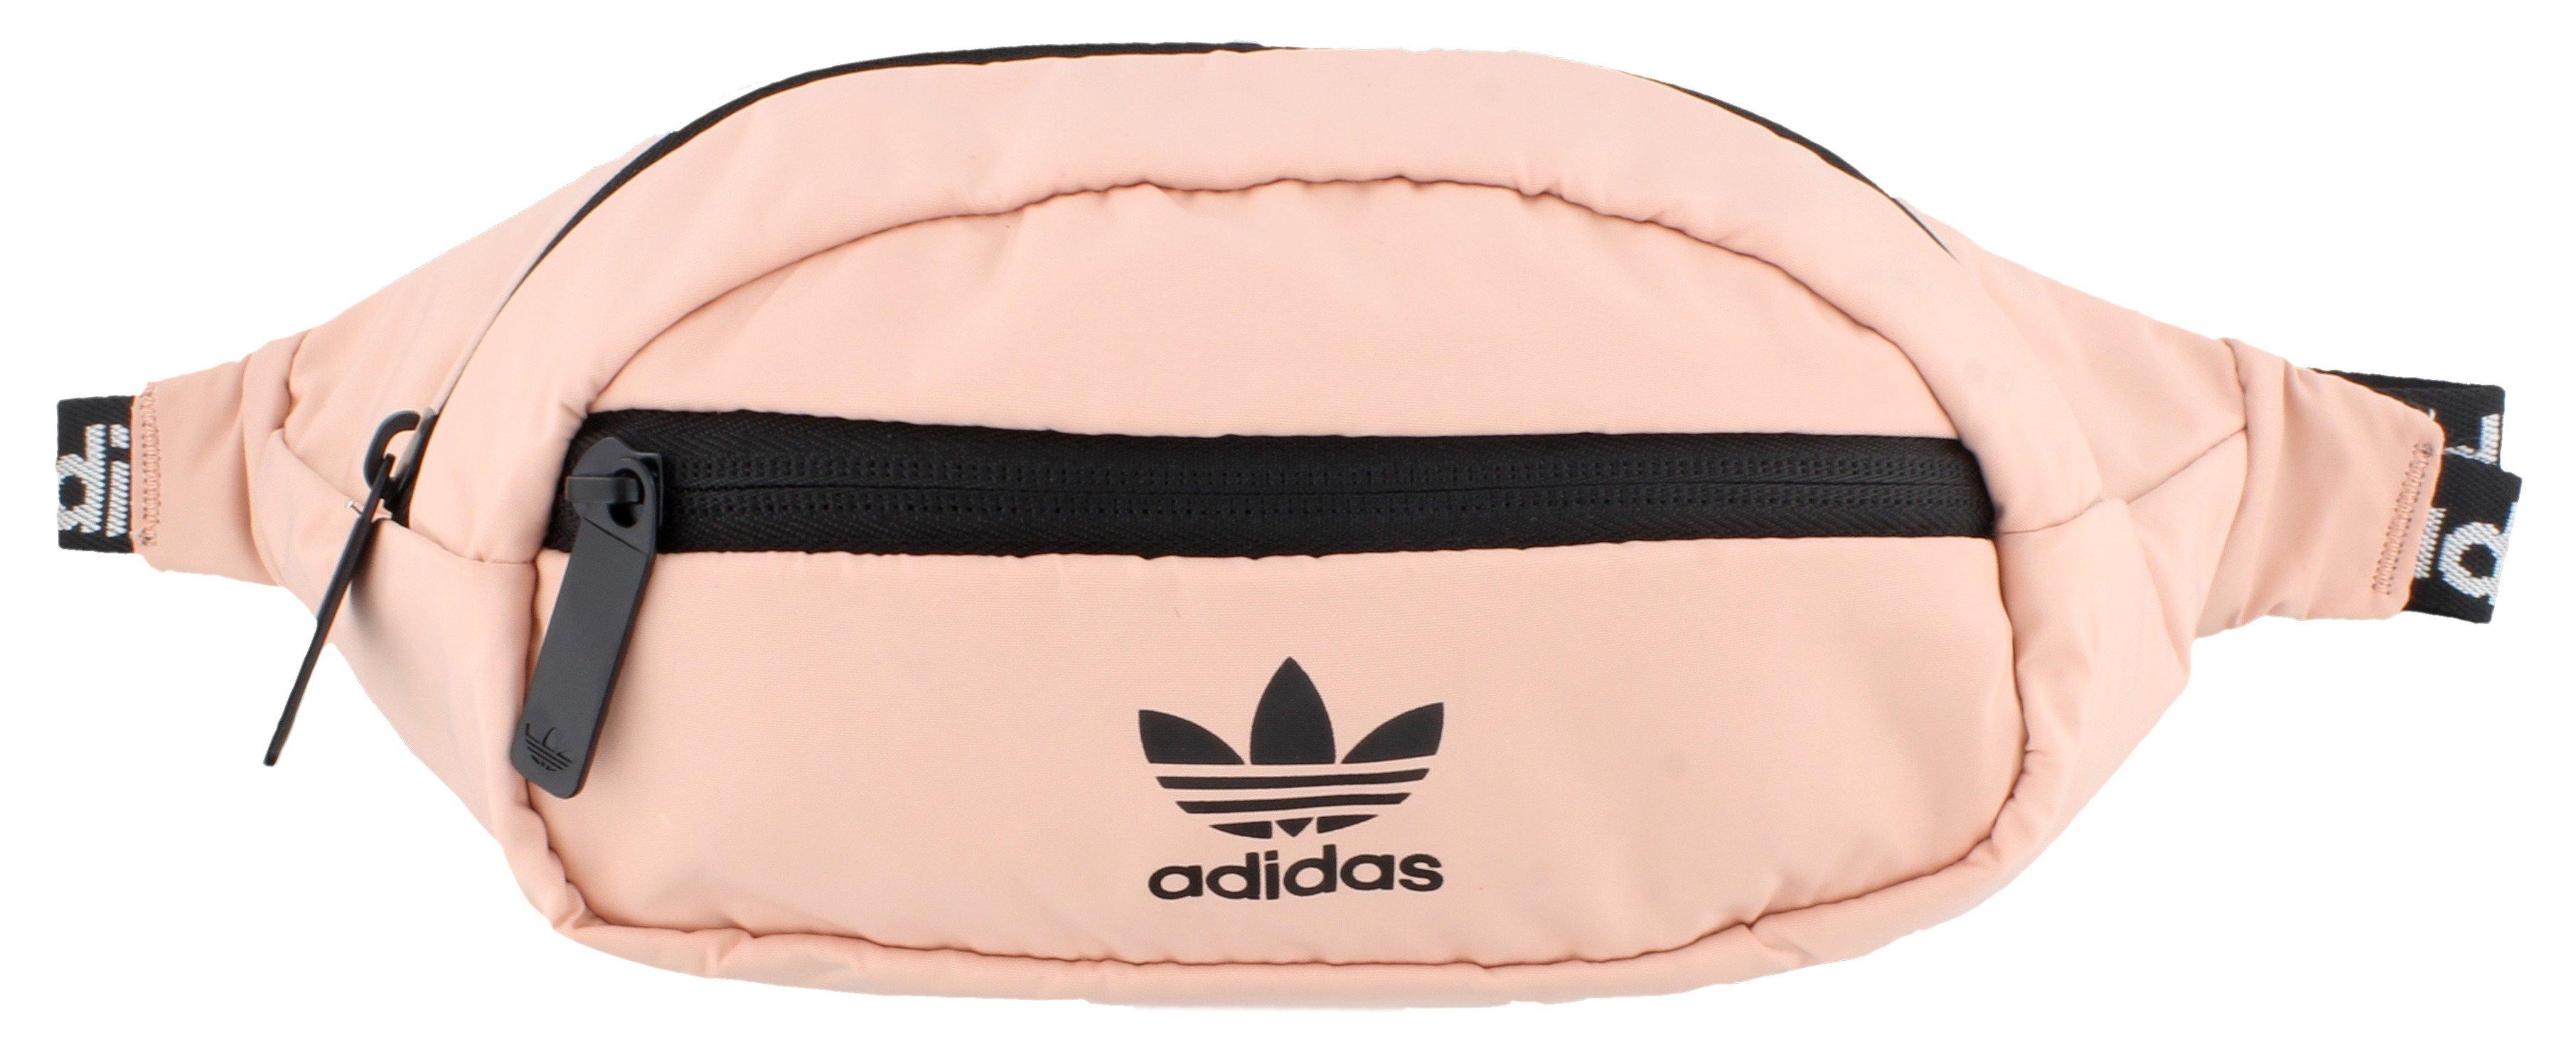 pink adidas bum bag